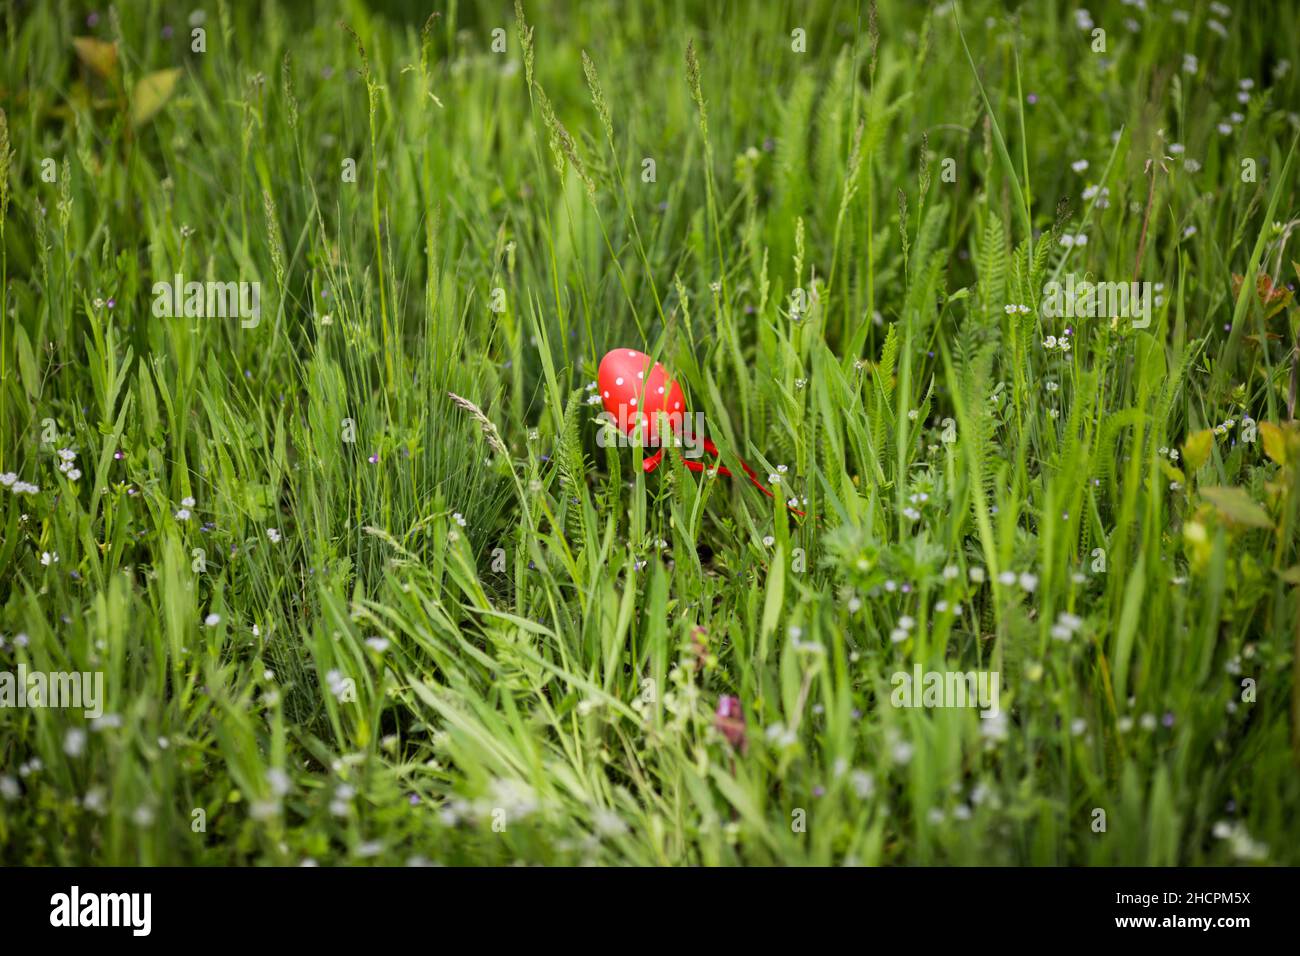 Profondeur de champ peu profonde (mise au point sélective) avec un œuf de pâques rouge dans l'herbe pendant une journée de printemps ensoleillée. Banque D'Images